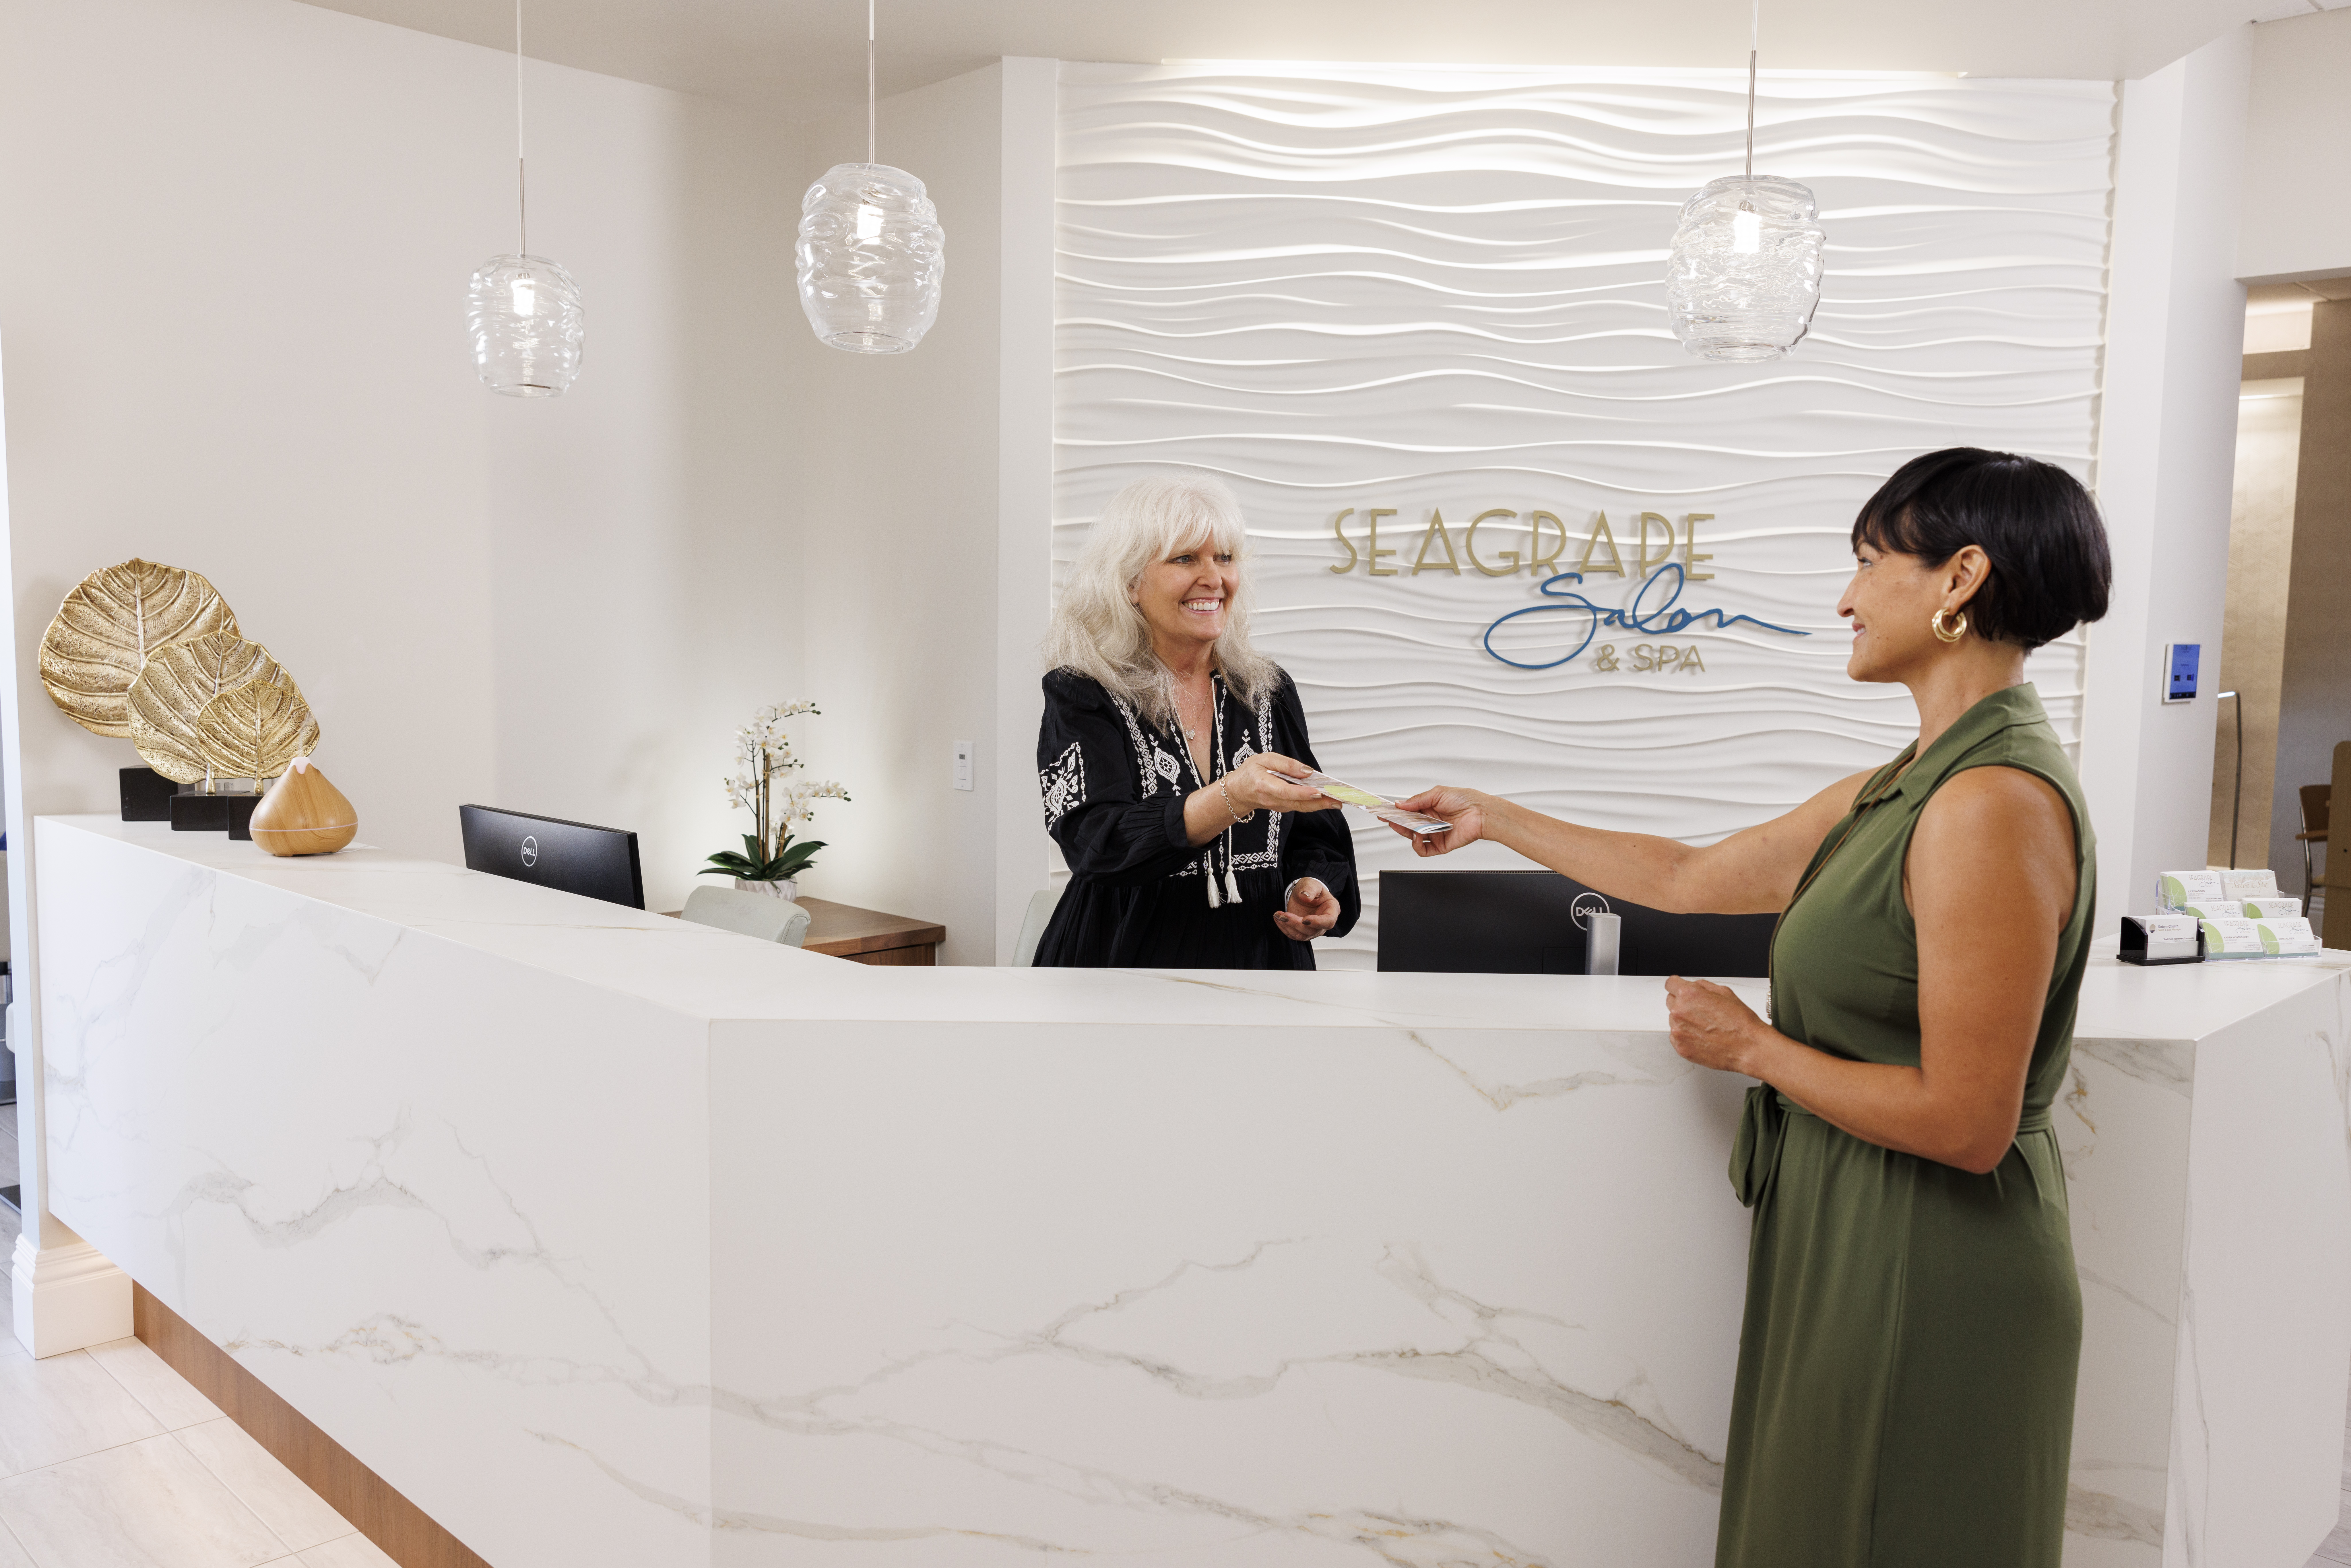 Seagrape Salon